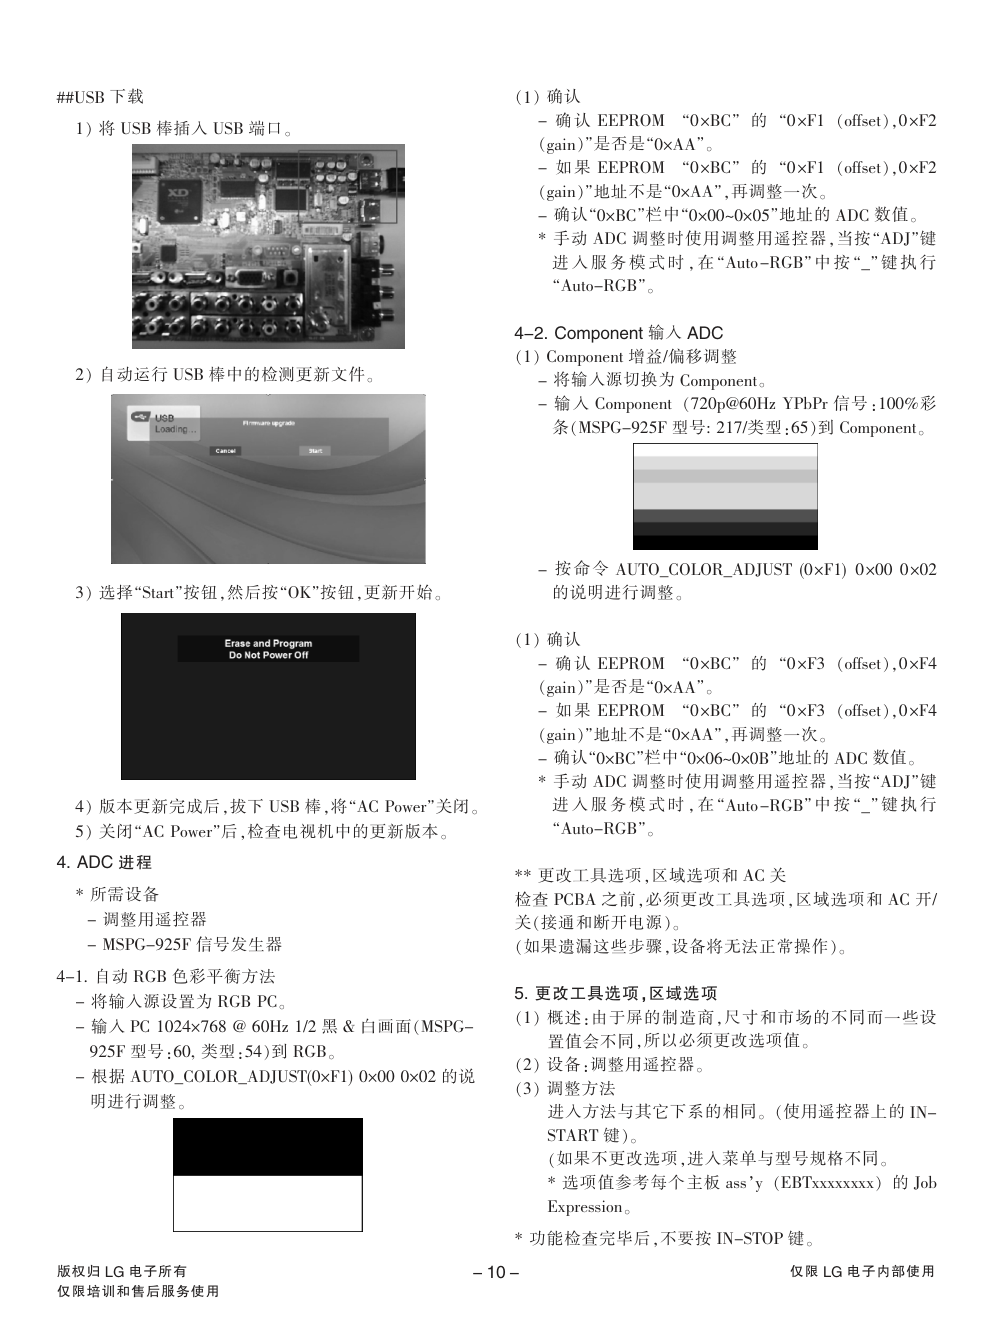 LG 32LG30R液晶电视维修手册和原理图-9